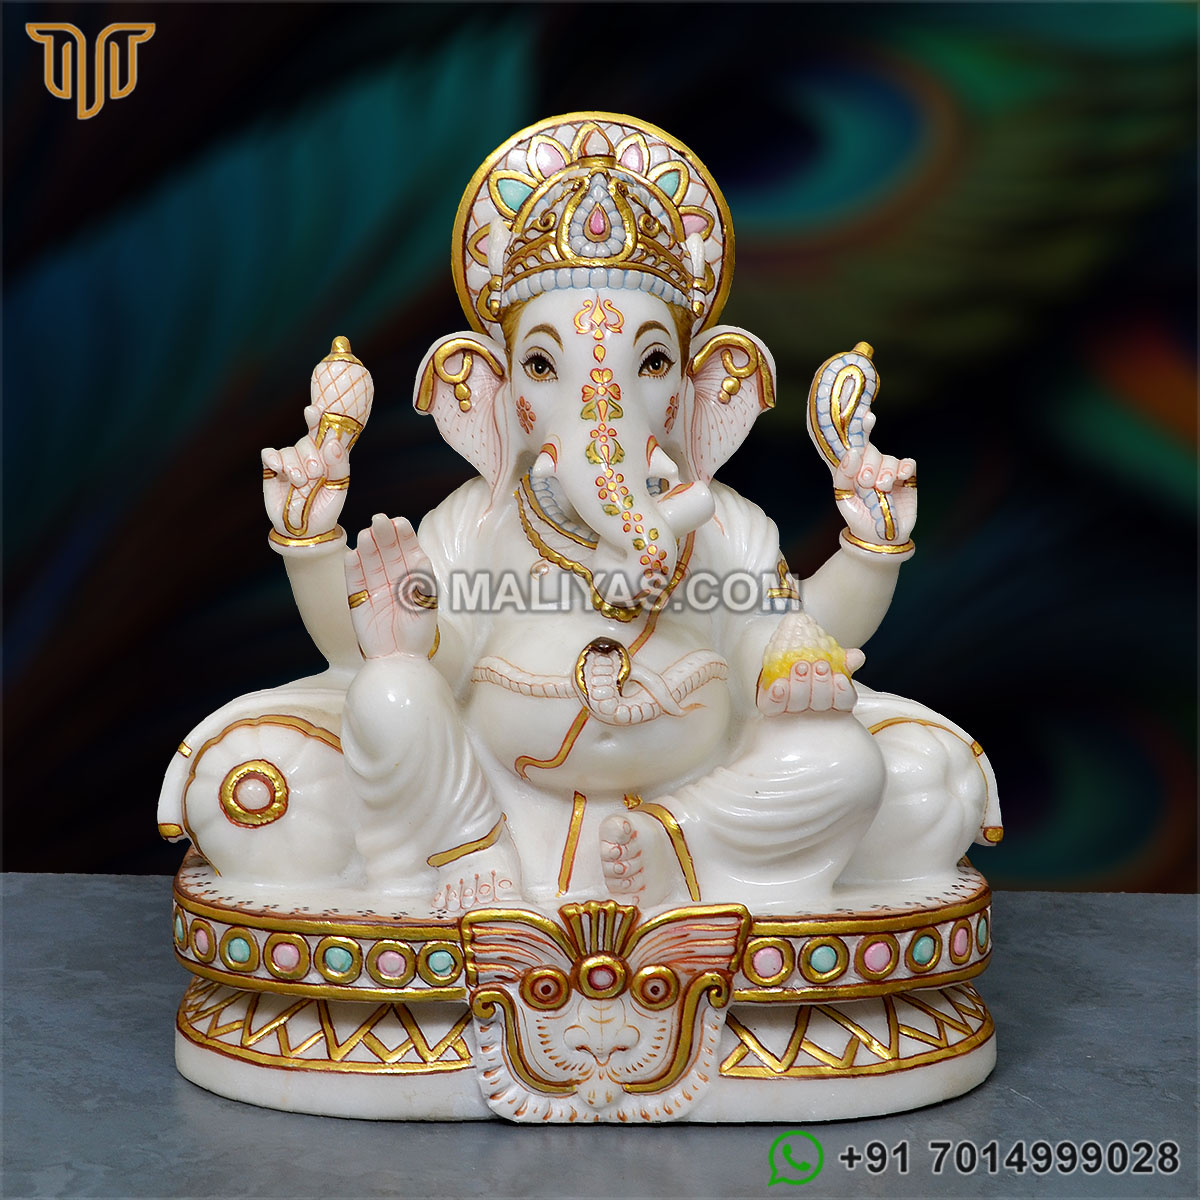 White Marble Ganesh Murti - 12 Inch